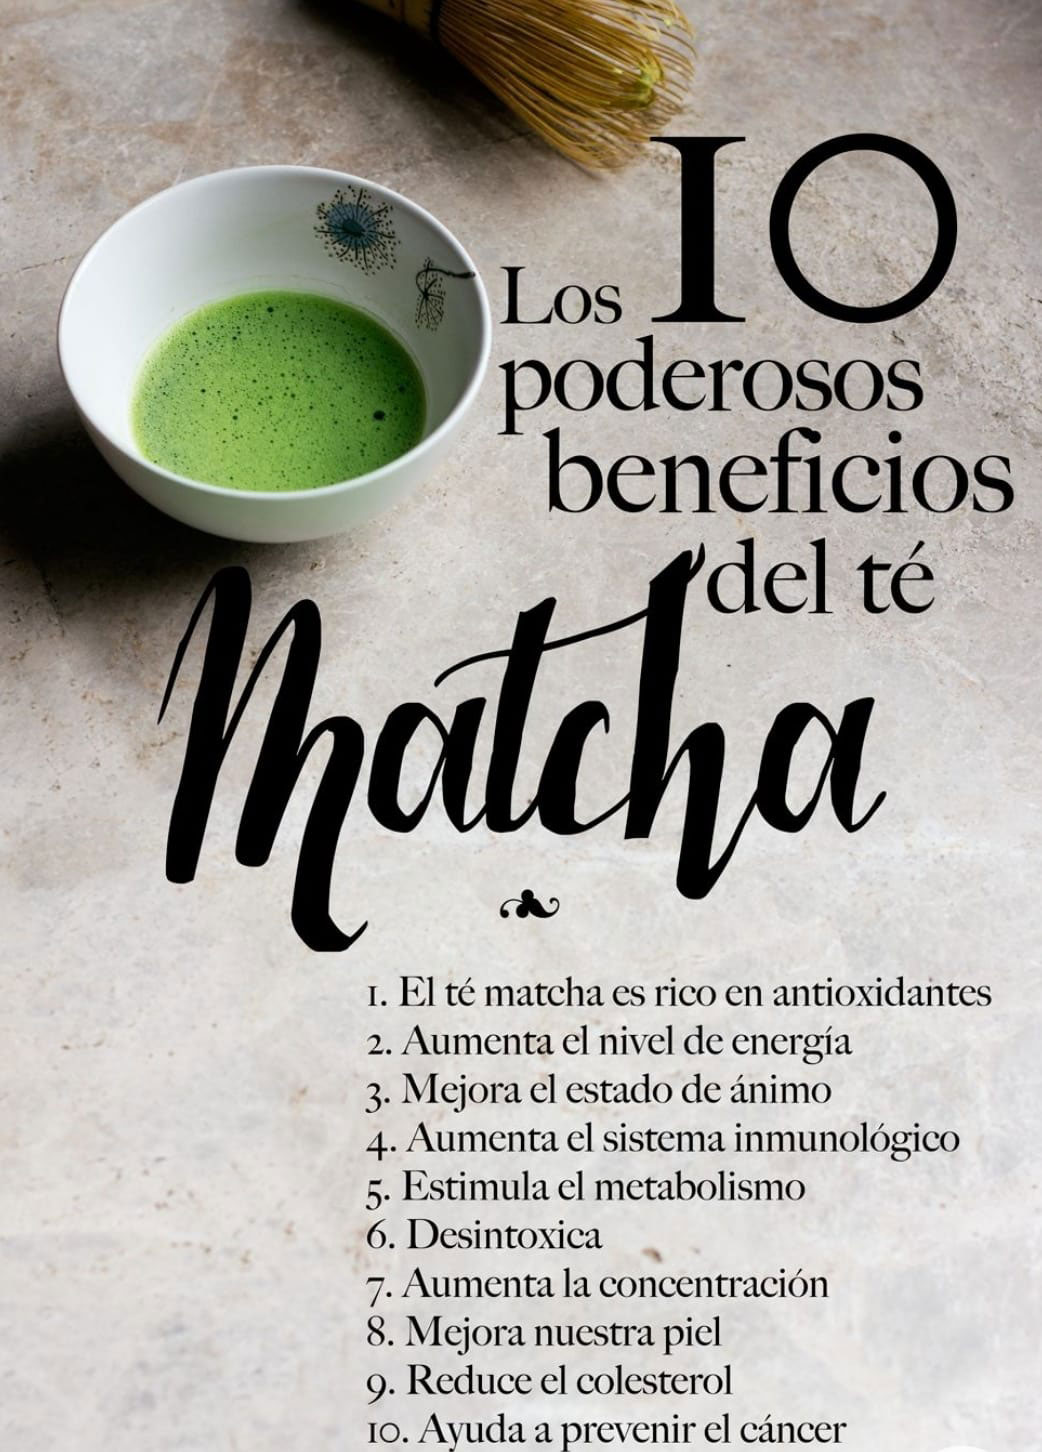 Curiosidades - Propiedades del té Matcha 